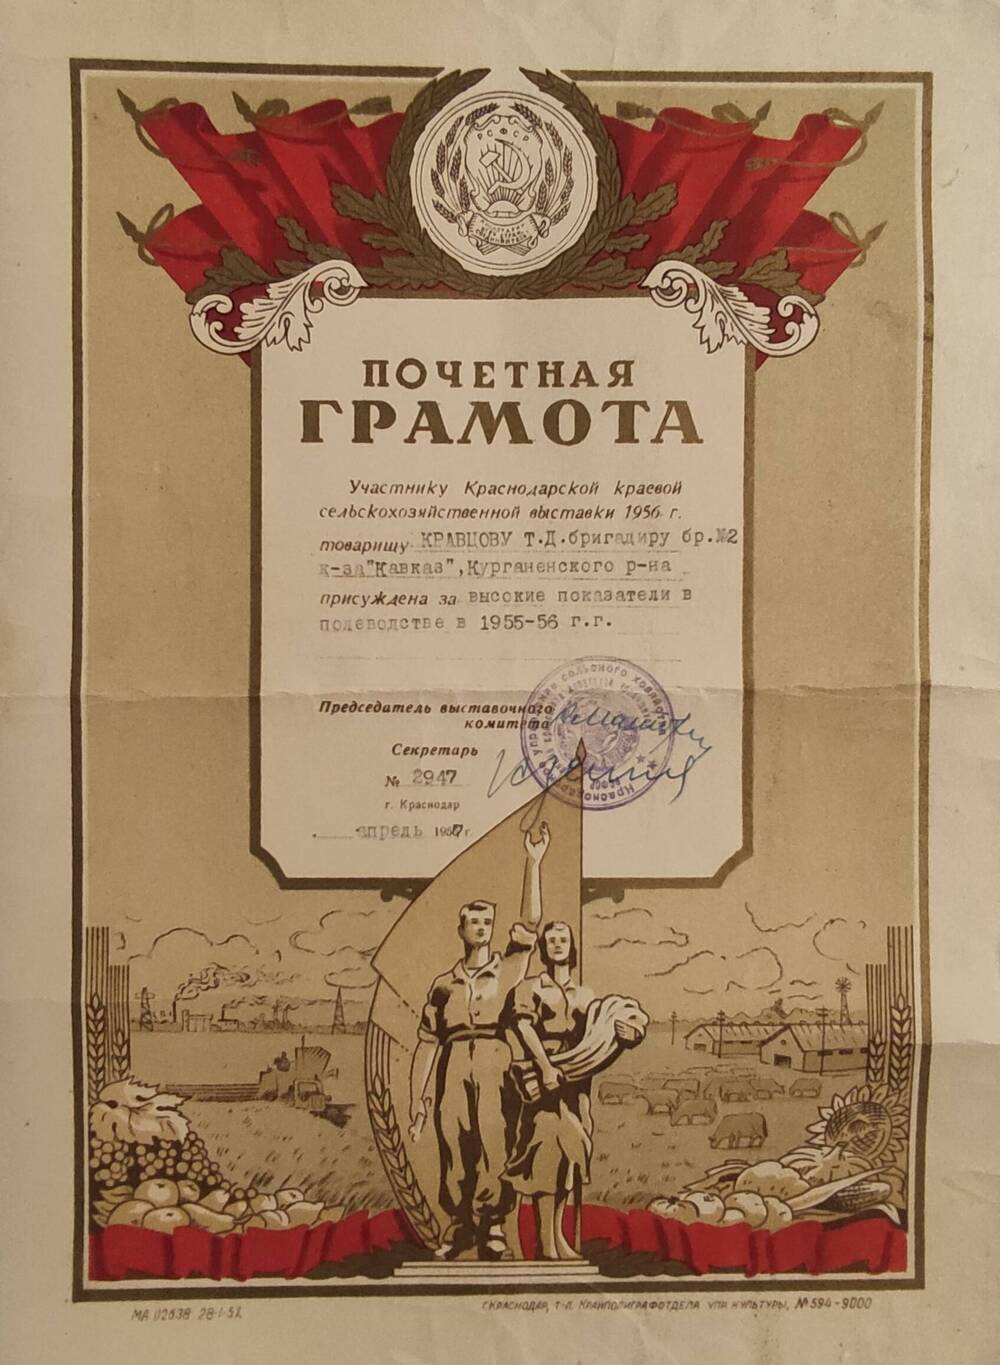 Почетная грамота Кравцову Тихону Дорофеевичу за высокие показатели в полеводстве в 1955-56 гг № 2947